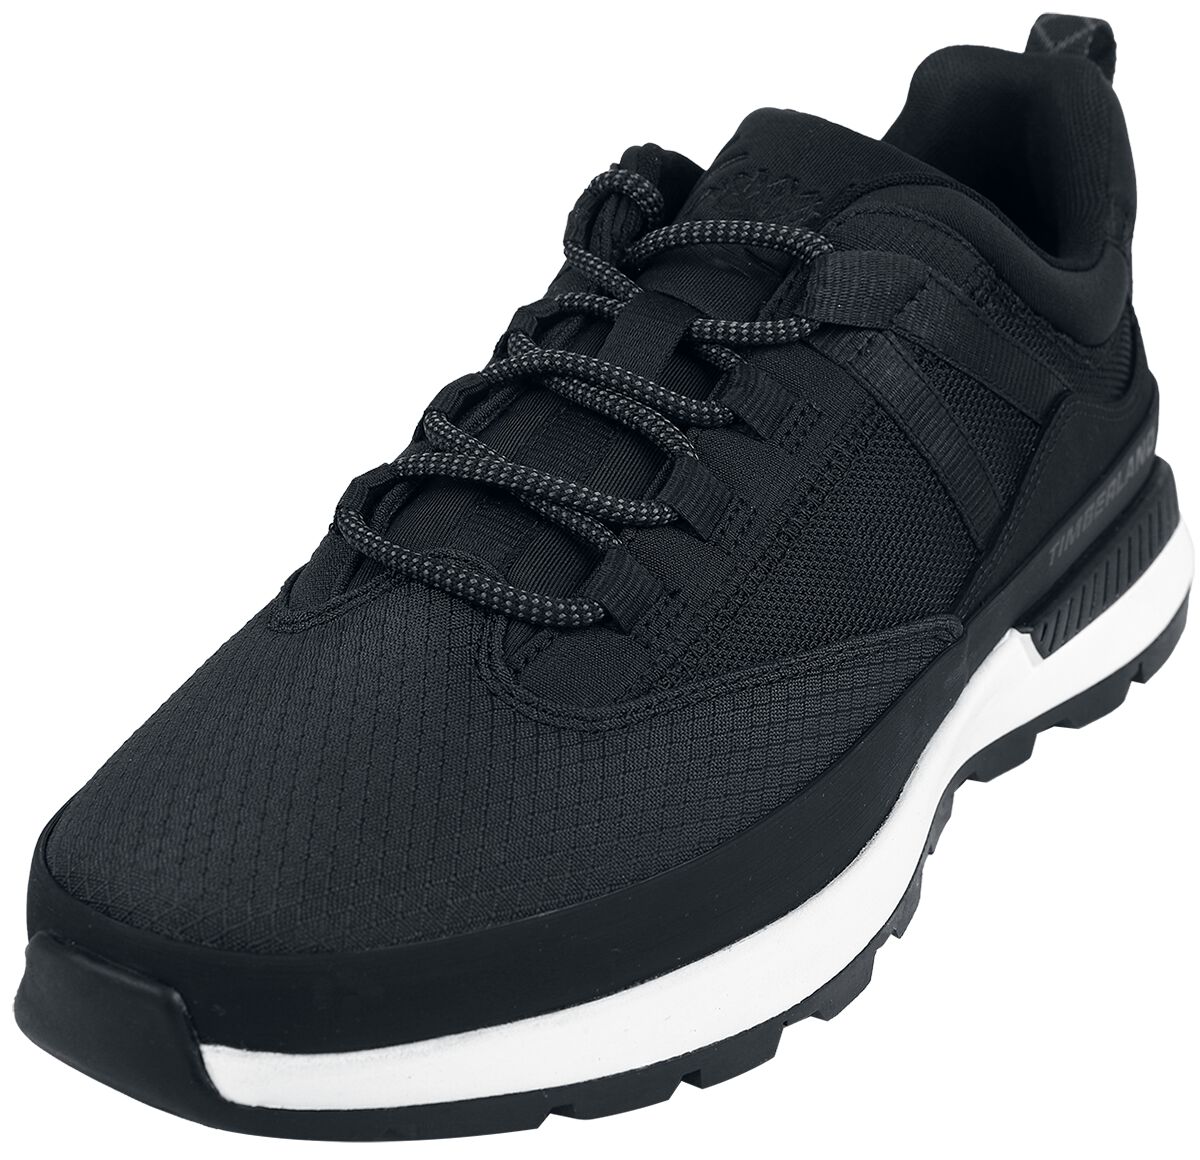 Timberland Sneaker - Euro Trekker Low Lace Up - EU41 bis EU46 - für Männer - Größe EU41 - schwarz